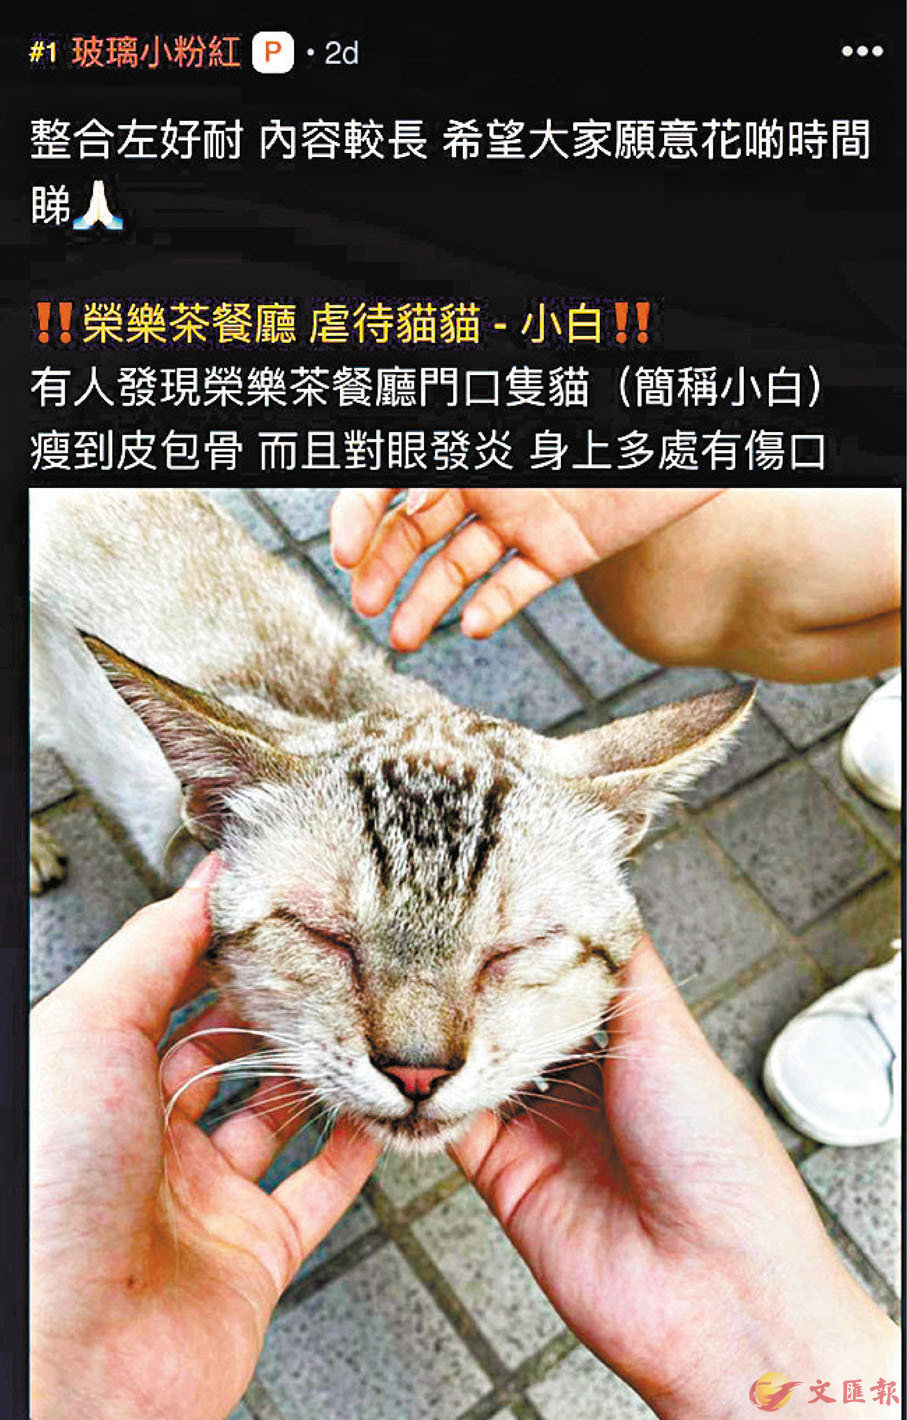 ●黃店沙田「榮樂茶餐廳」涉嫌虐貓。 連登截圖